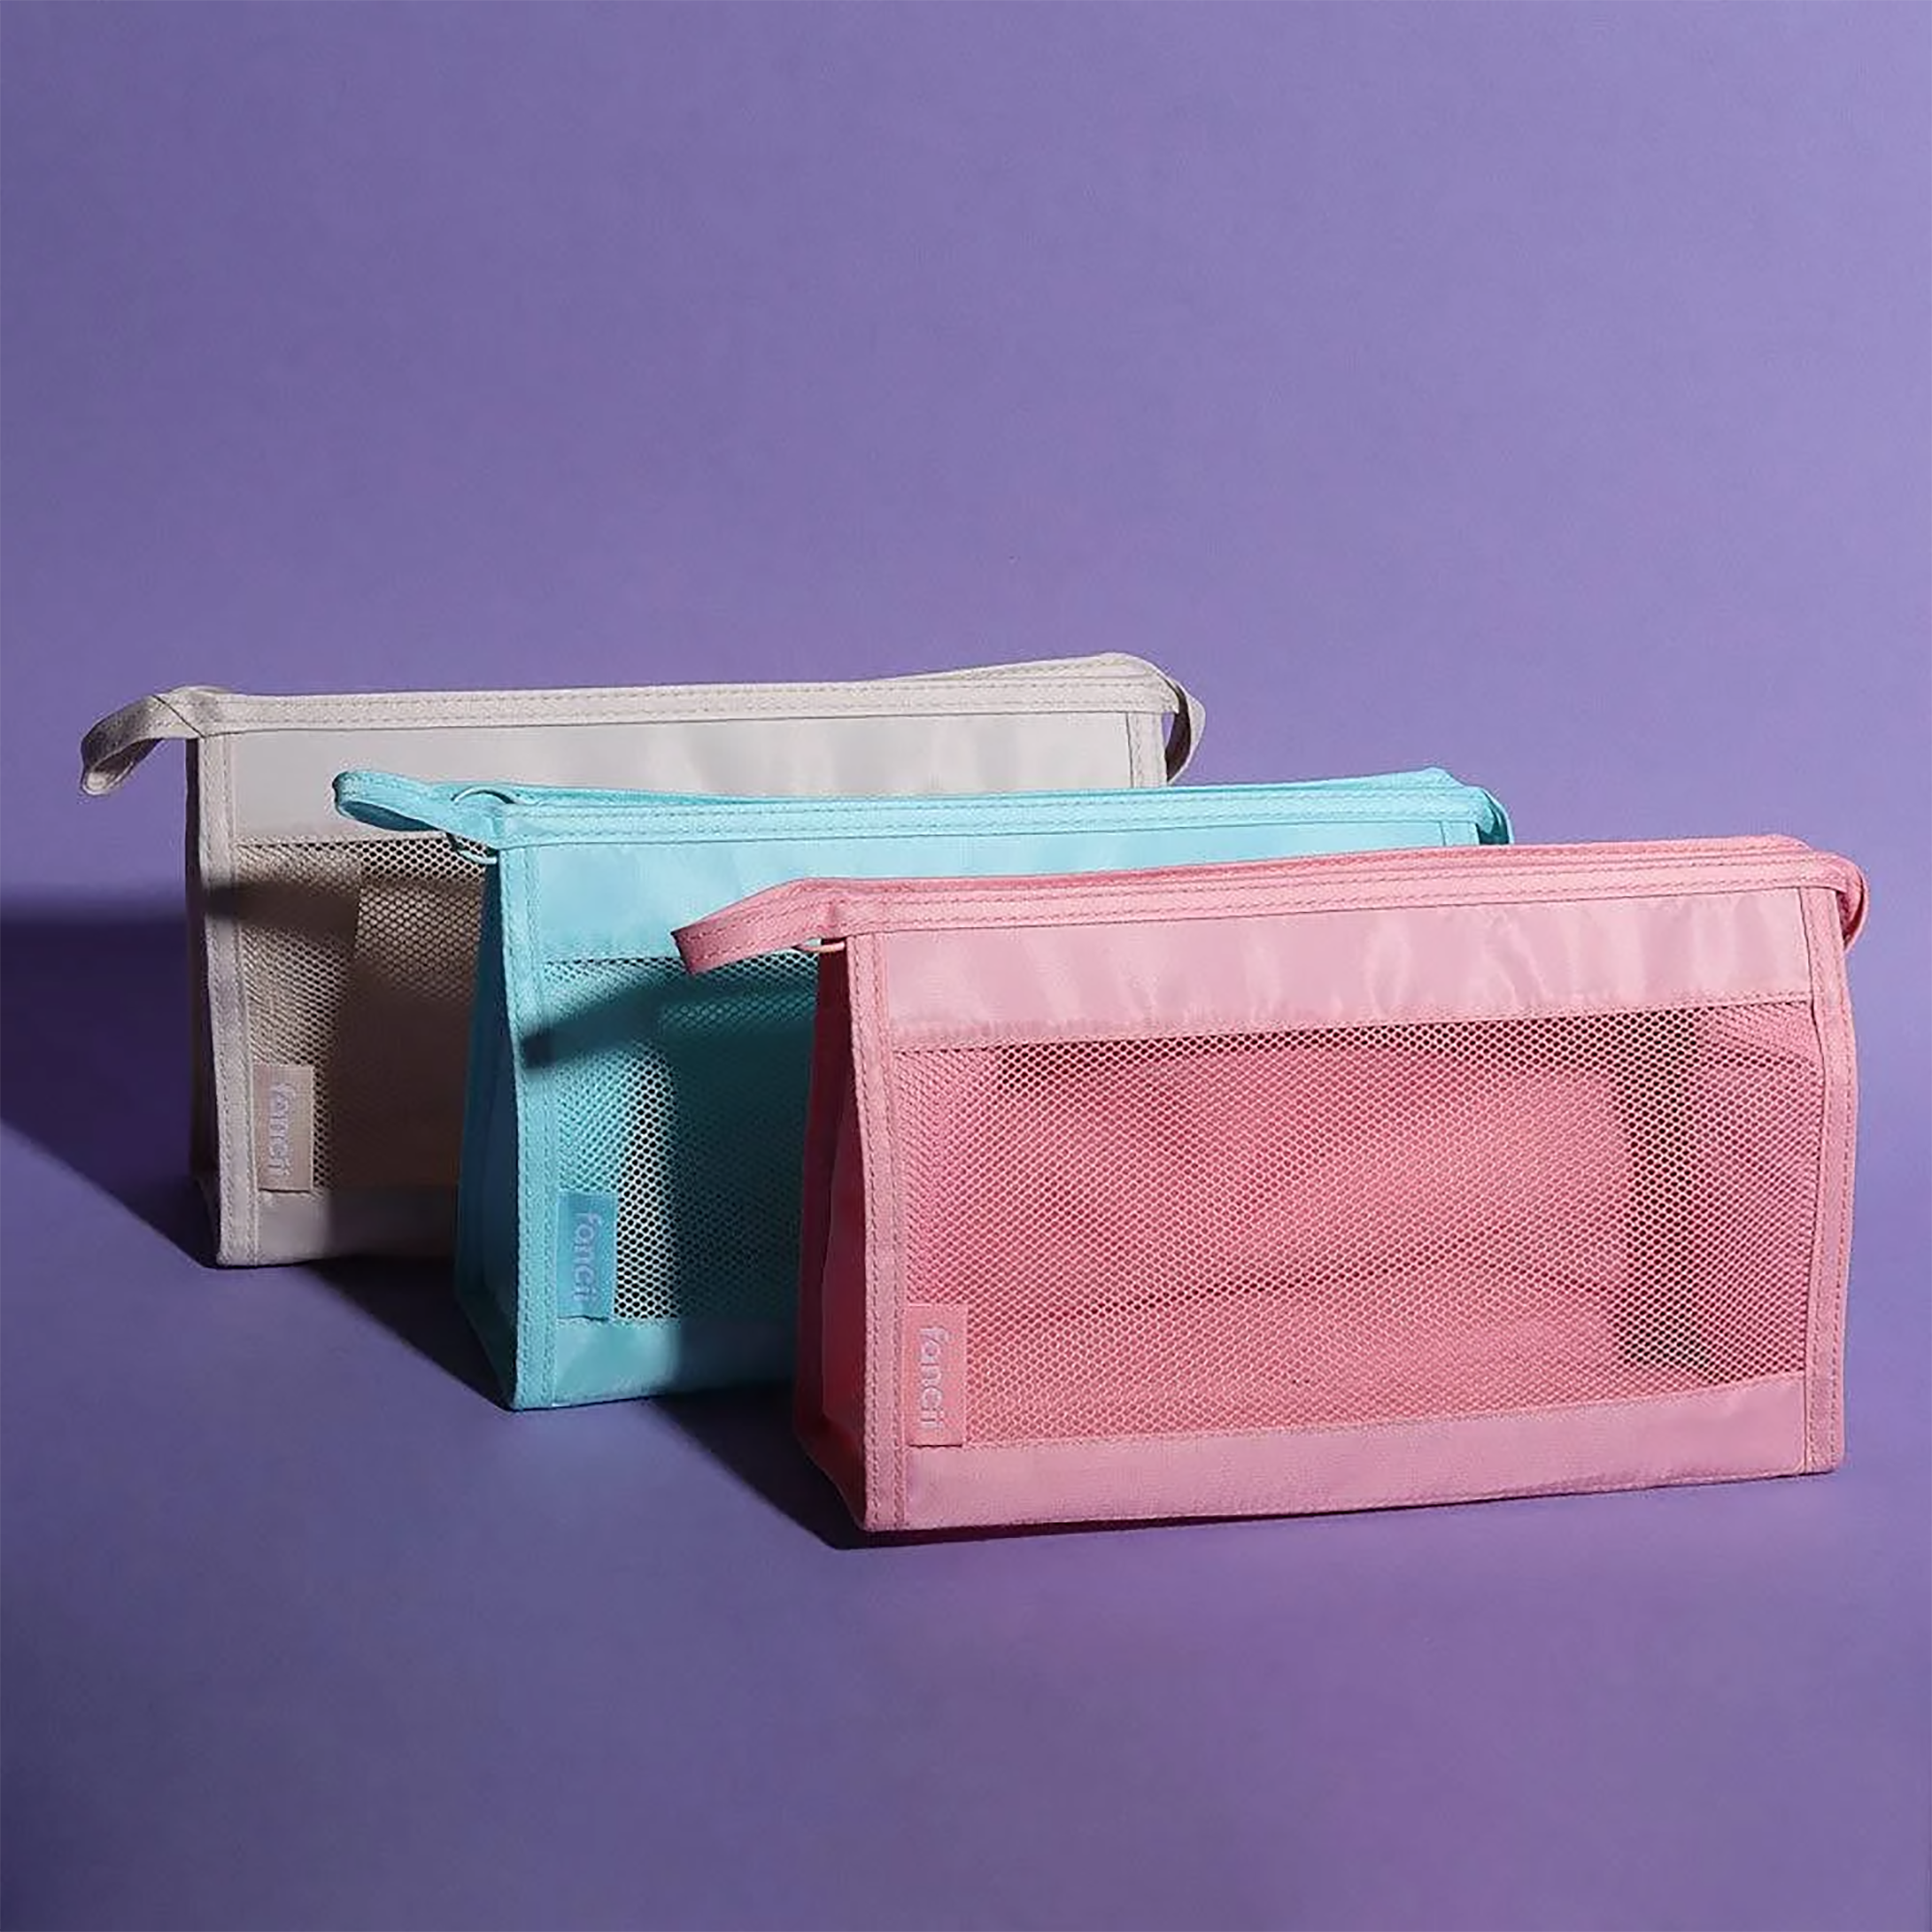 Fancii Cloe Makeup & Toiletry Bag - Aqua / AQUA